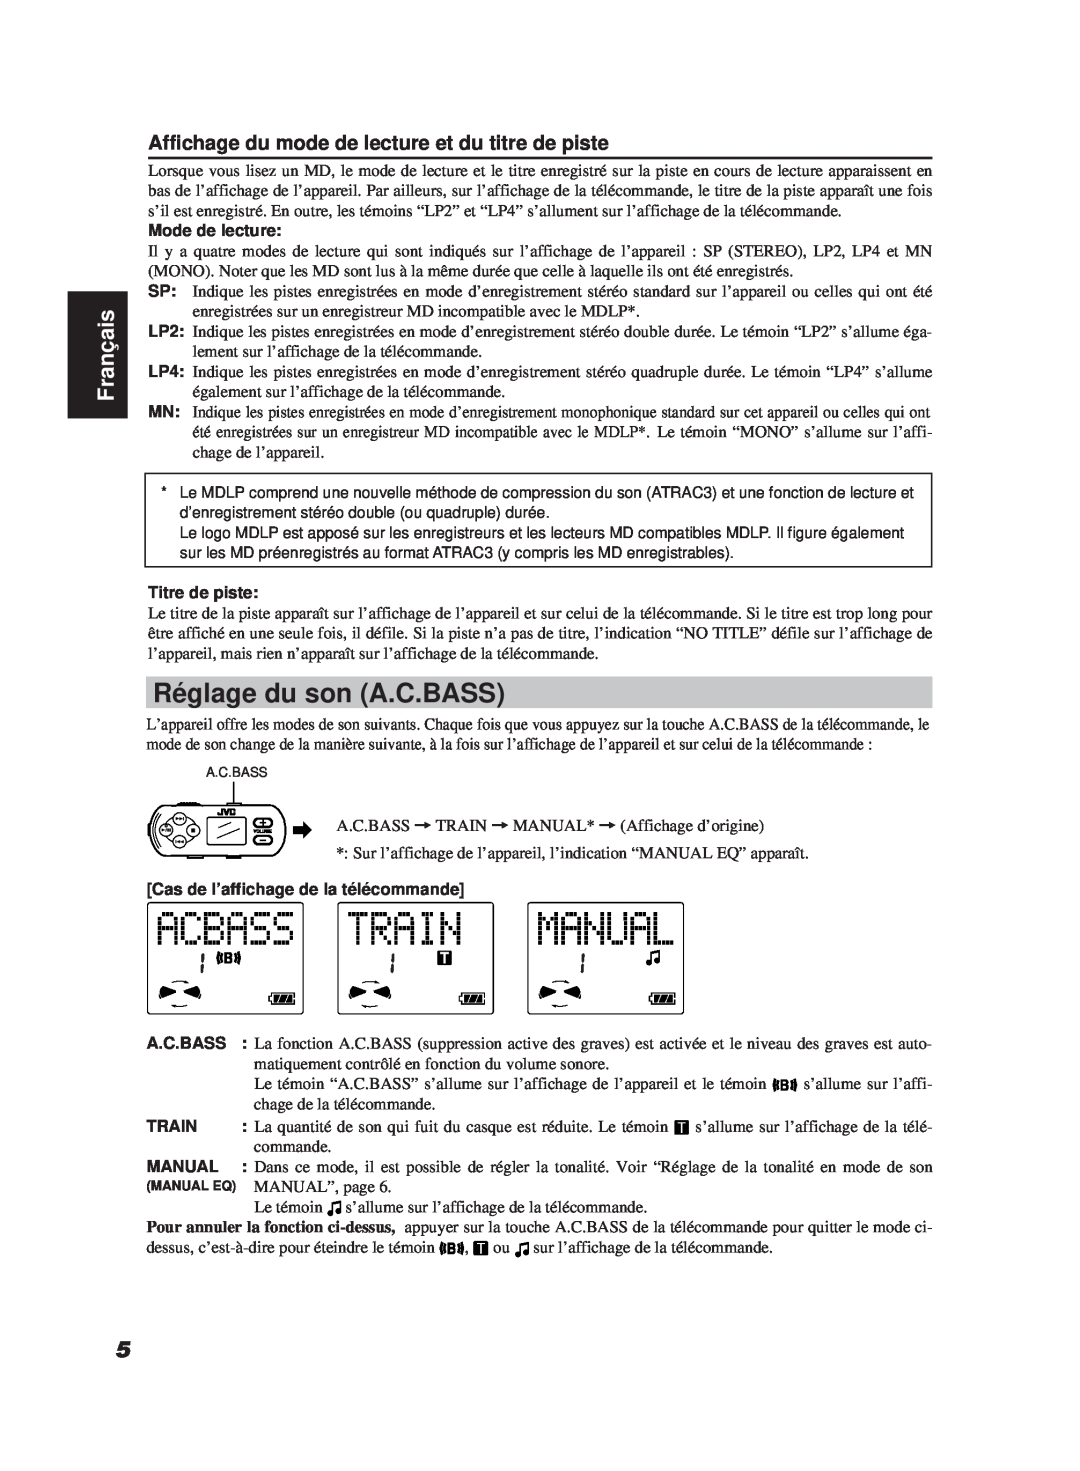 JVC XM-R700SL Réglage du son A.C.BASS, Affichage du mode de lecture et du titre de piste, Français, Mode de lecture, Train 